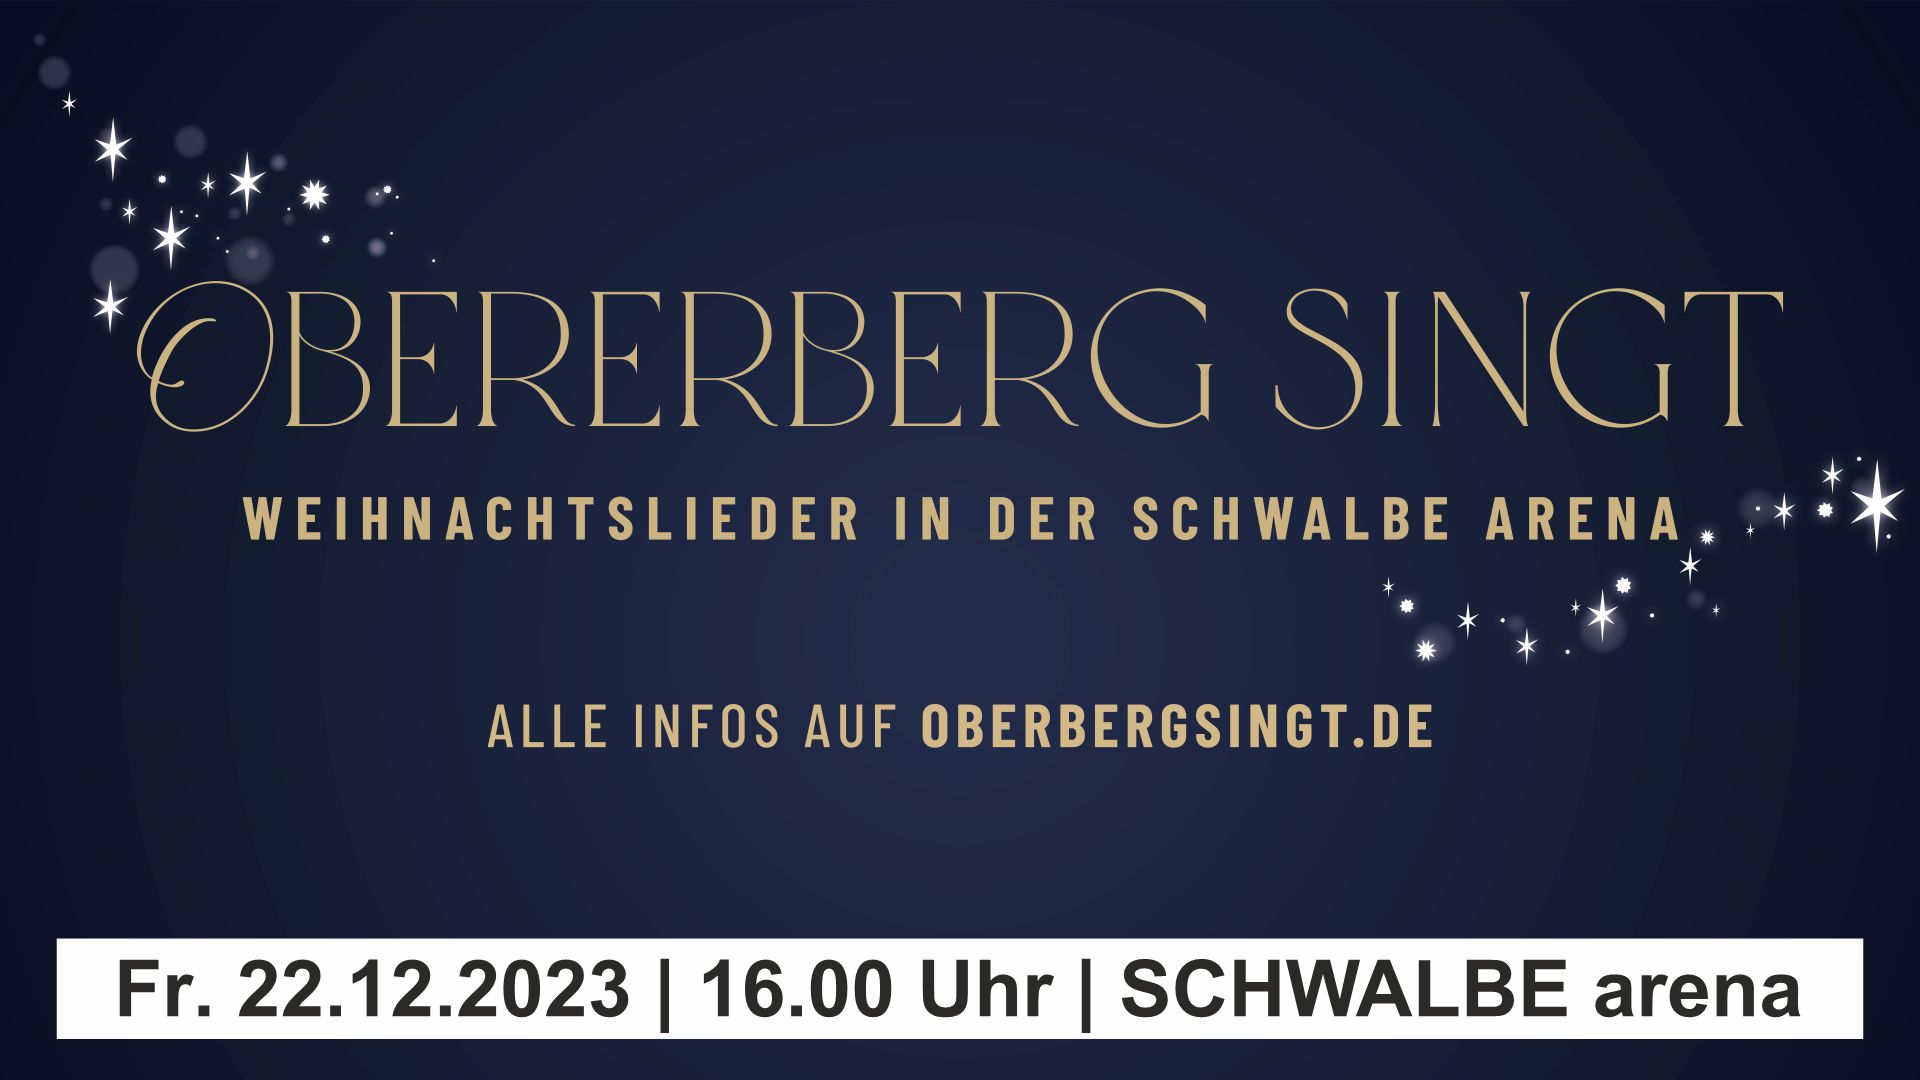 SCHWALBE arena | Oberberg singt WEIHNACHTSLIEDER